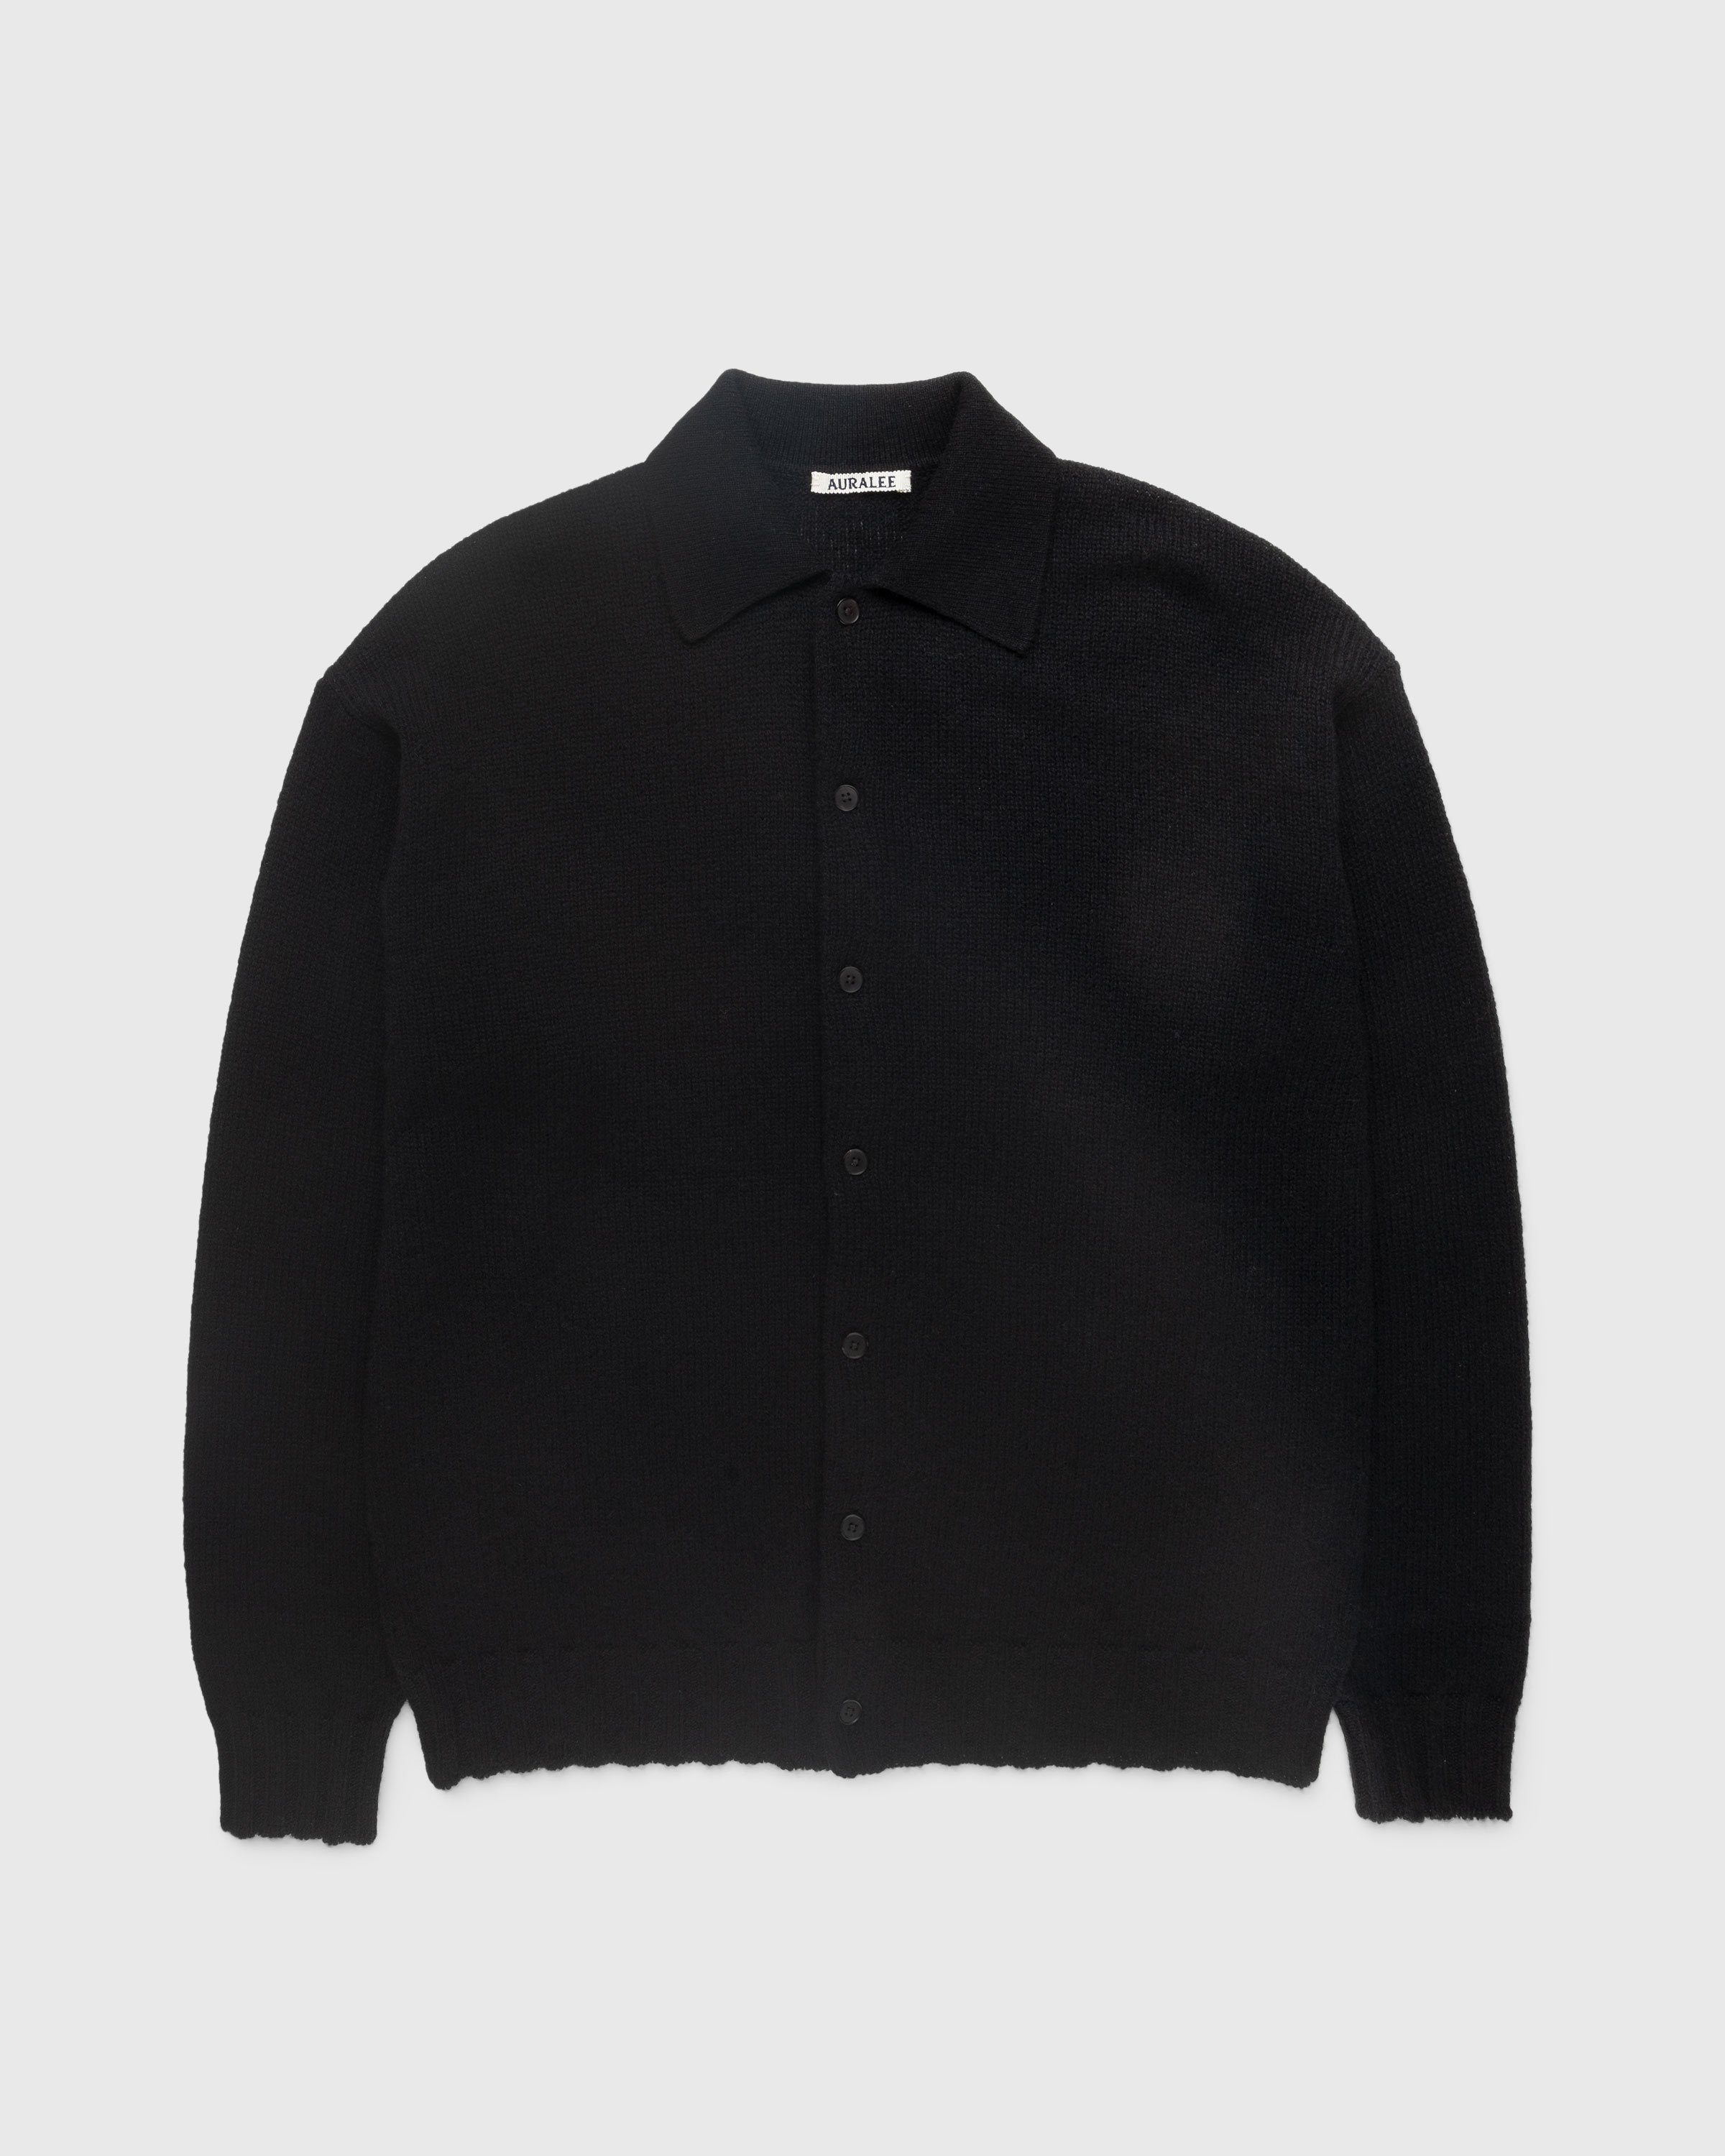 Auralee - Shetland Wool Cashmere Knit Cardigan Black - Clothing - Black - Image 1